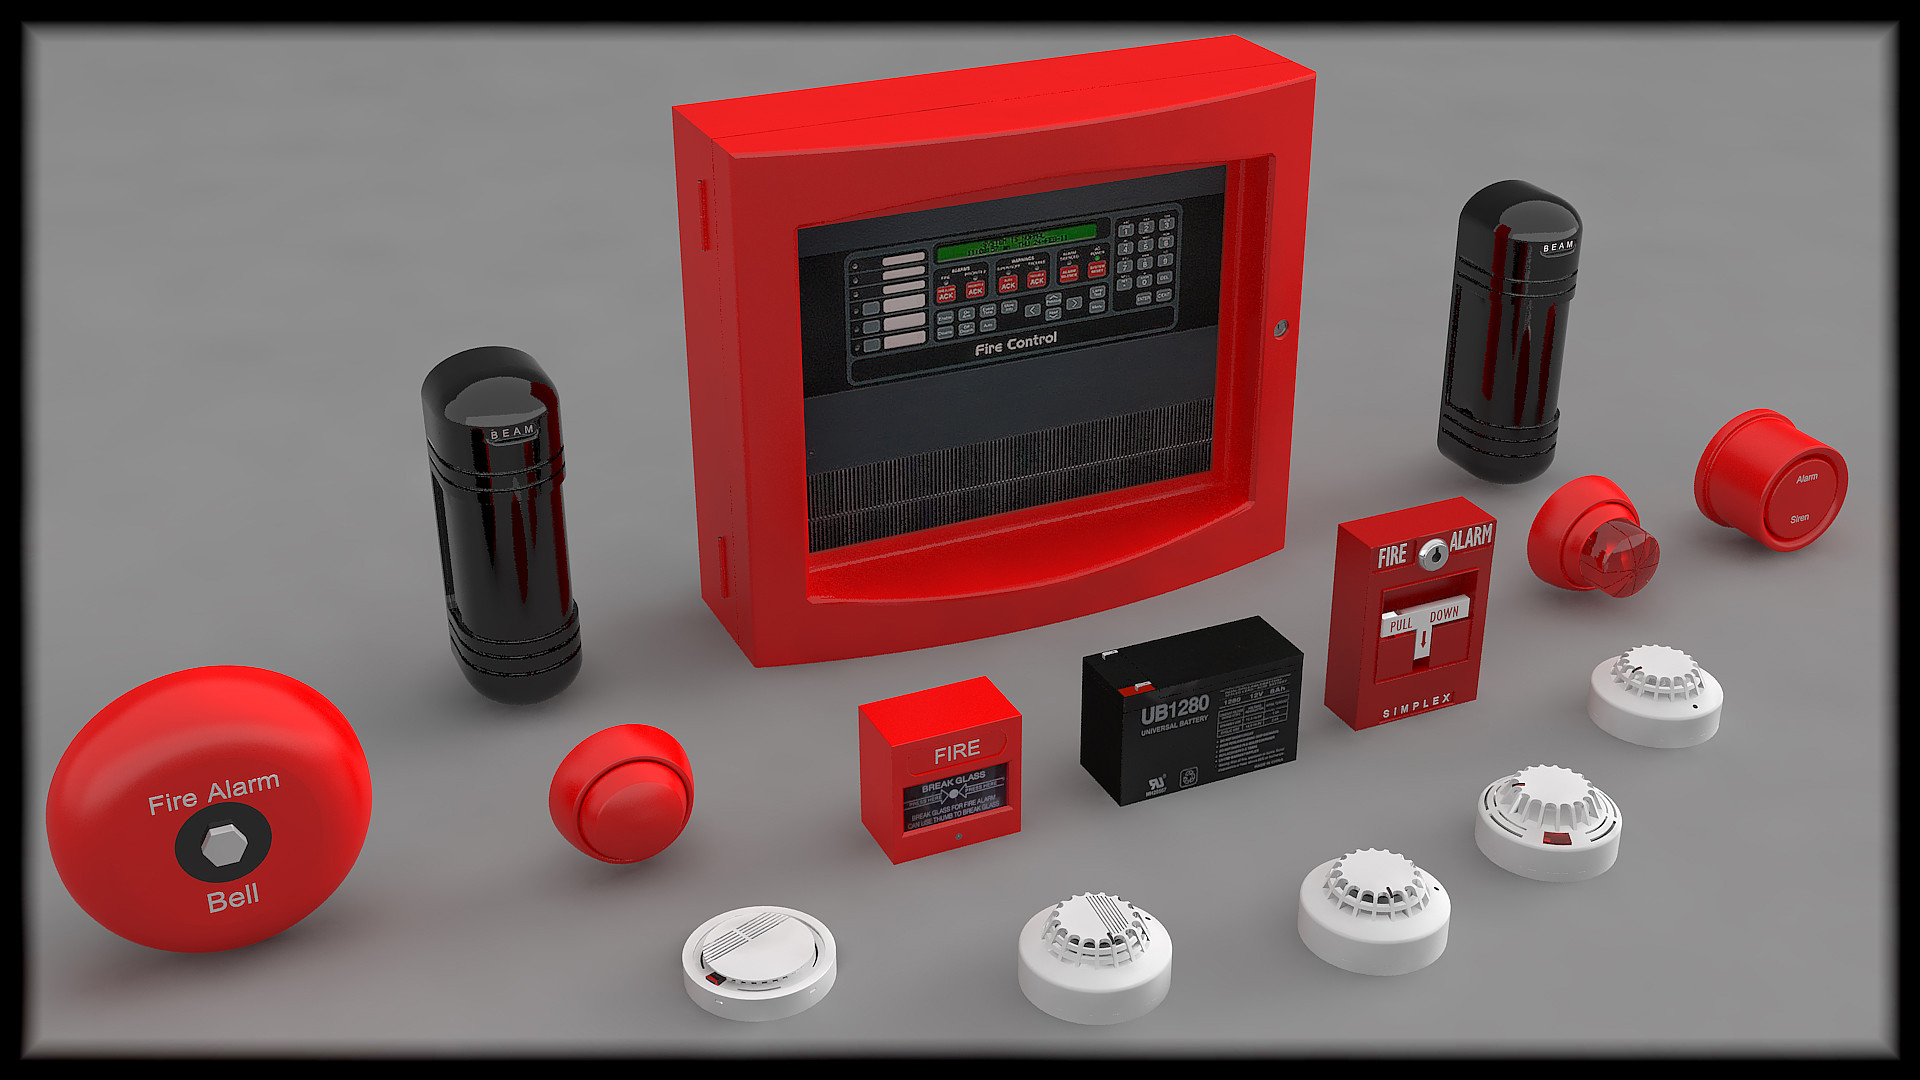 Автоматическая охранно пожарная сигнализация. Пожарная сигнализация Аларм. FS 5200 Fire Alarm. NPA 101 Fire Alarm System. Alarm System сигнализация.